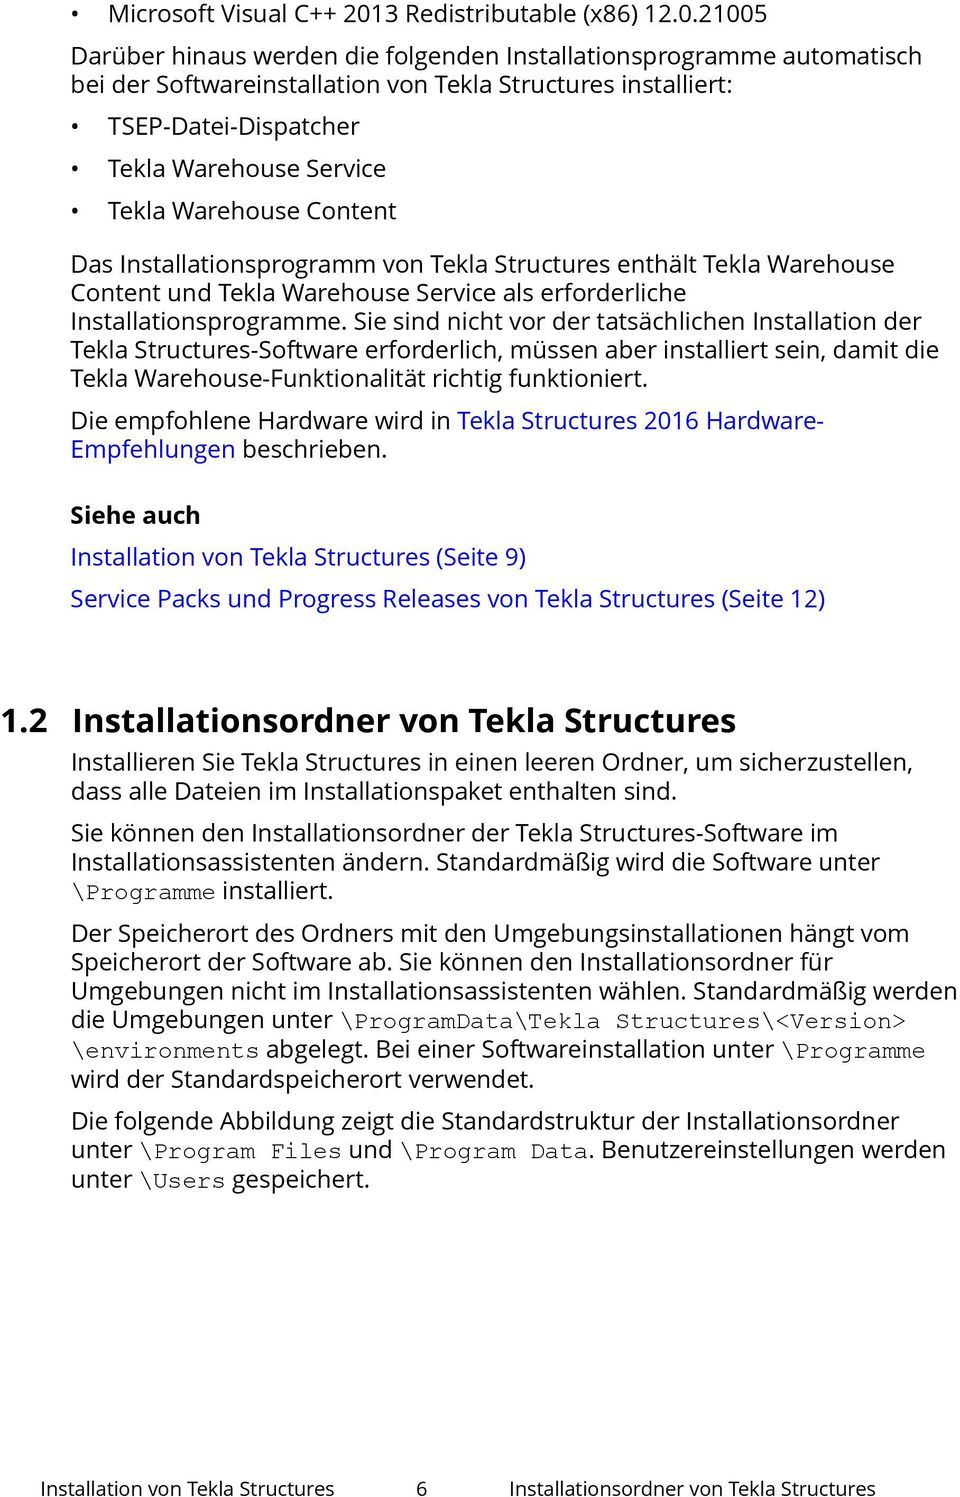 21005 Darüber hinaus werden die folgenden Installationsprogramme automatisch bei der Softwareinstallation von Tekla Structures installiert: TSEP-Datei-Dispatcher Tekla Warehouse Service Tekla